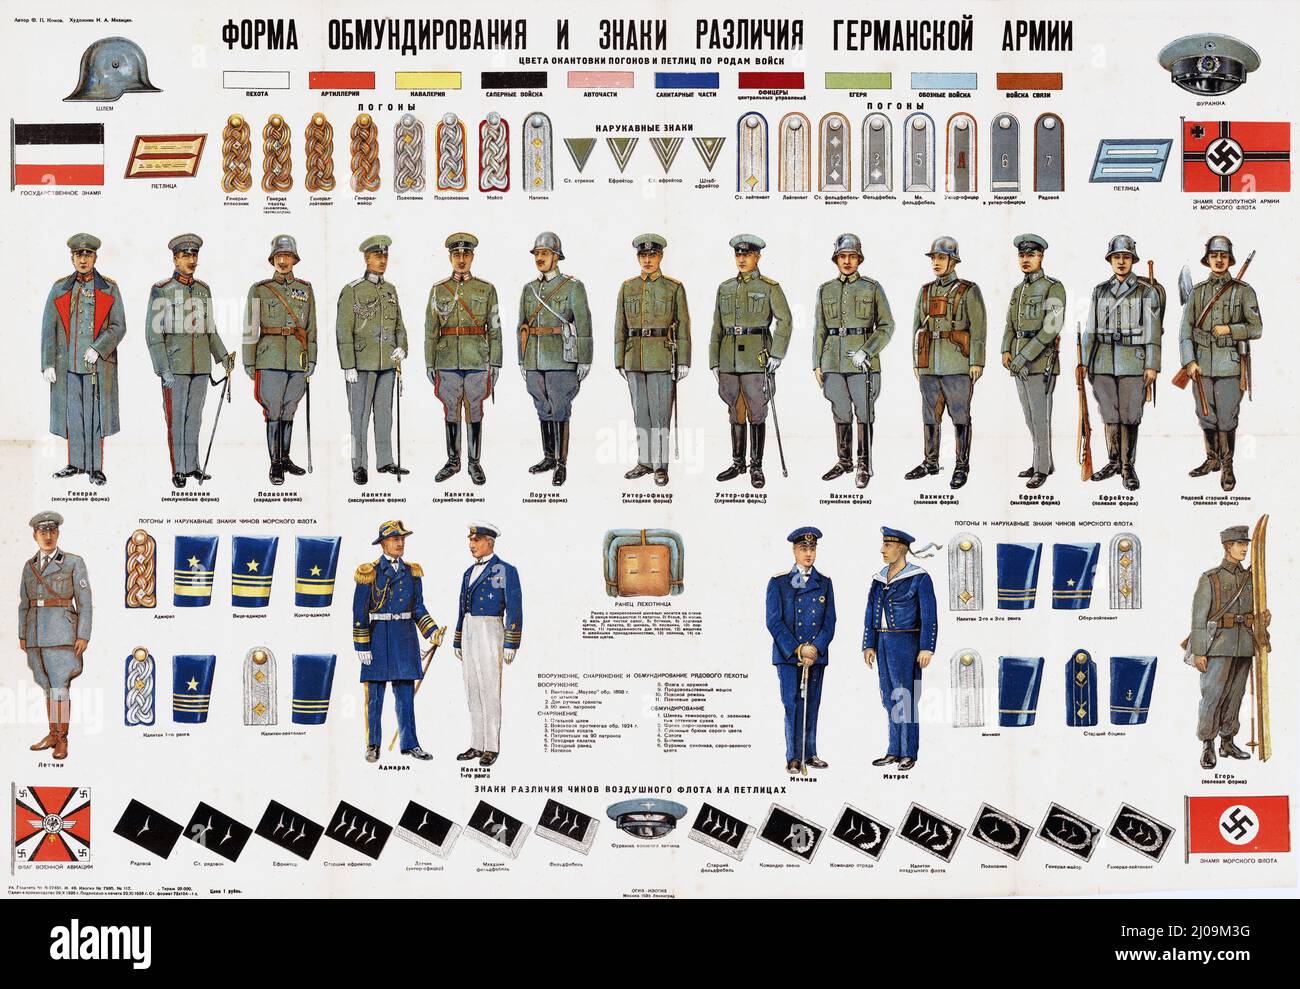 Sowjetische Plakat-/Wandkarte mit anschaulichen Abbildungen von Militäruniformen, Insignien und Flaggen Nazi-Deutschlands um 1933–34, veröffentlicht 1936. Stockfoto